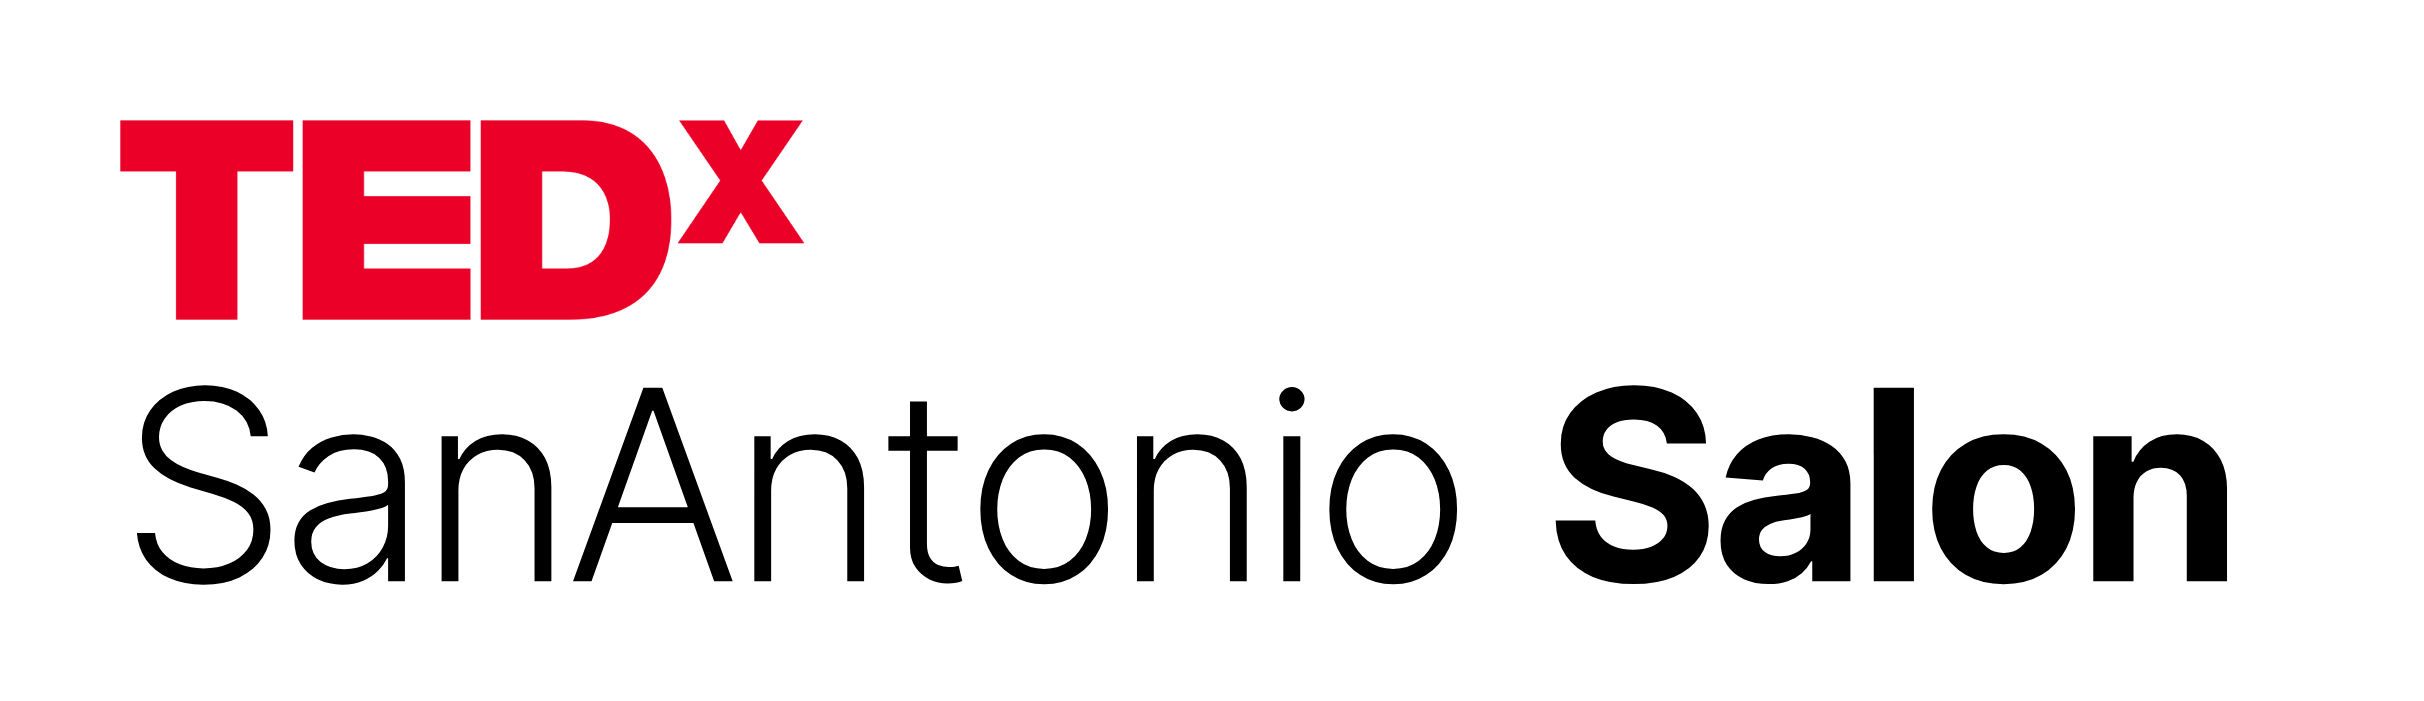 Salon-TEDxSA-Logo-C.png